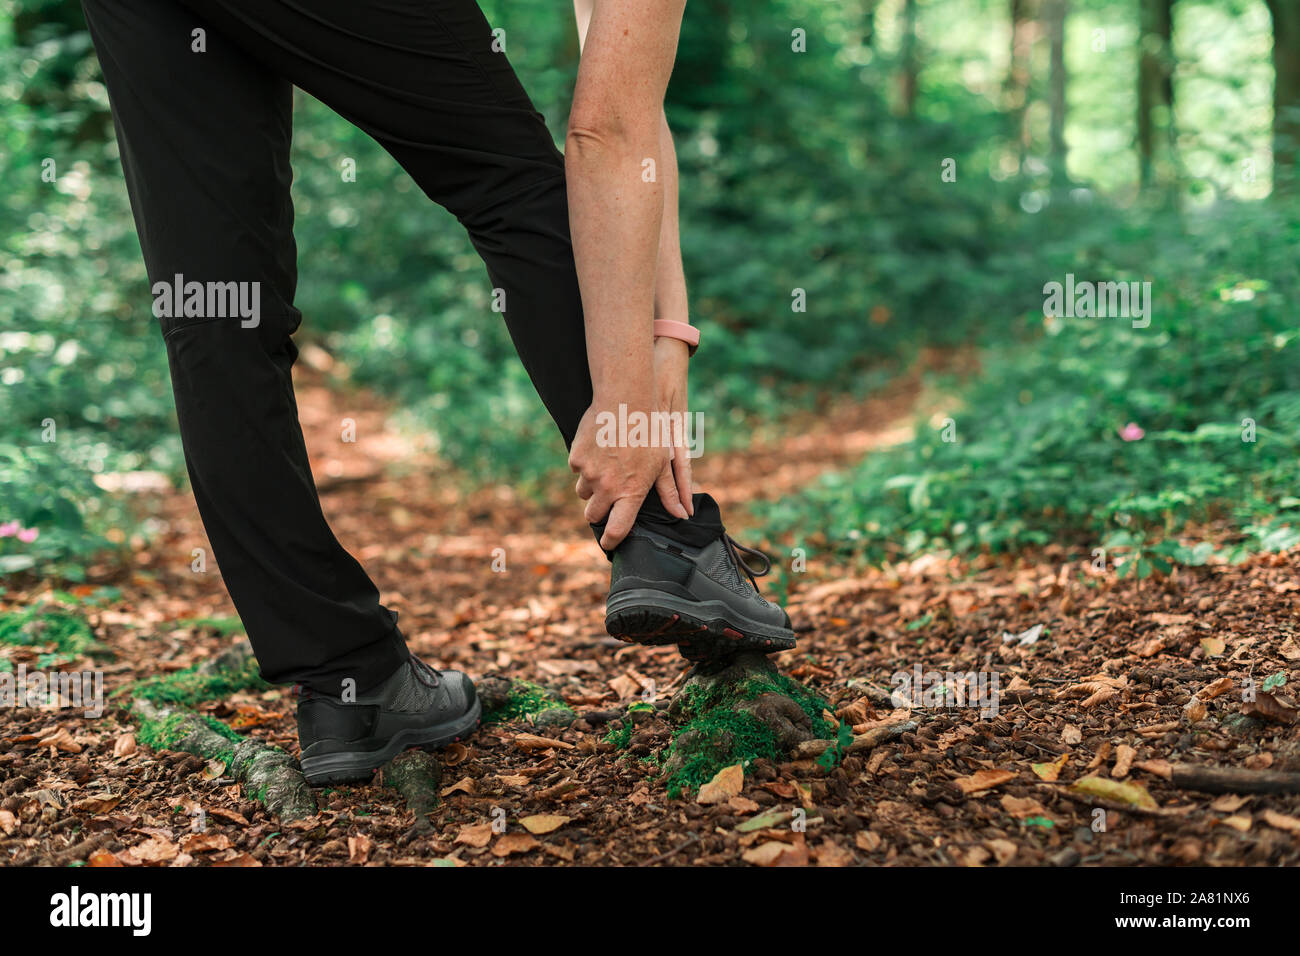 Weibliche Wanderer mit knöchelverletzung im Wald bei Outdoor trekking Aktivität, selektiver Fokus Stockfoto